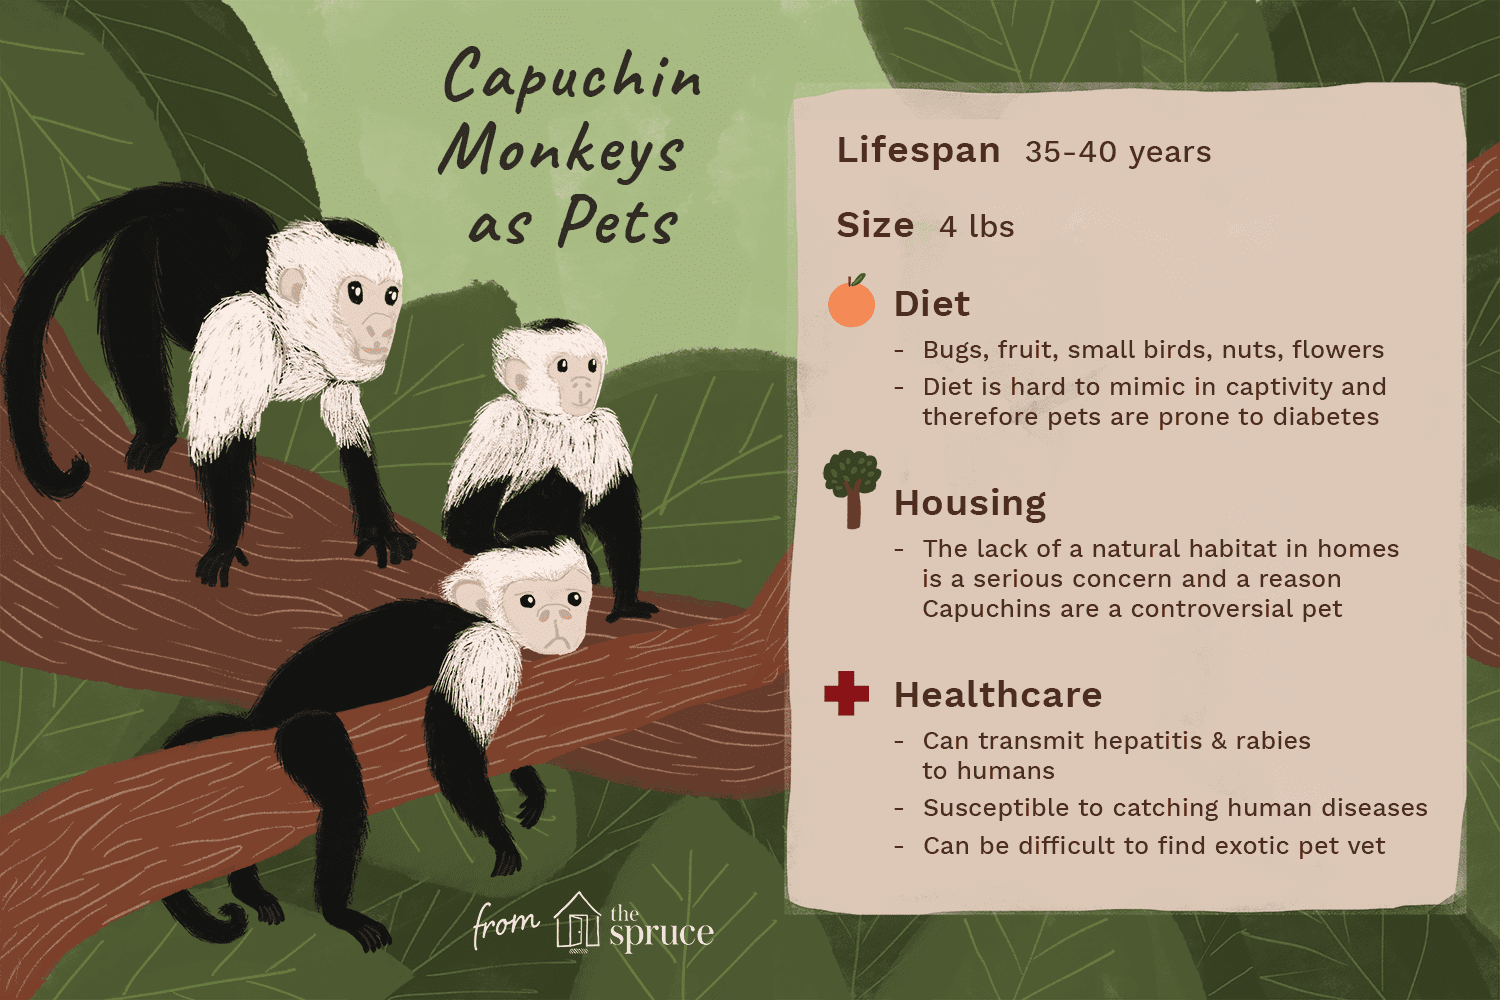 카푸친 원숭이를 애완용으로 키워야 합니까?